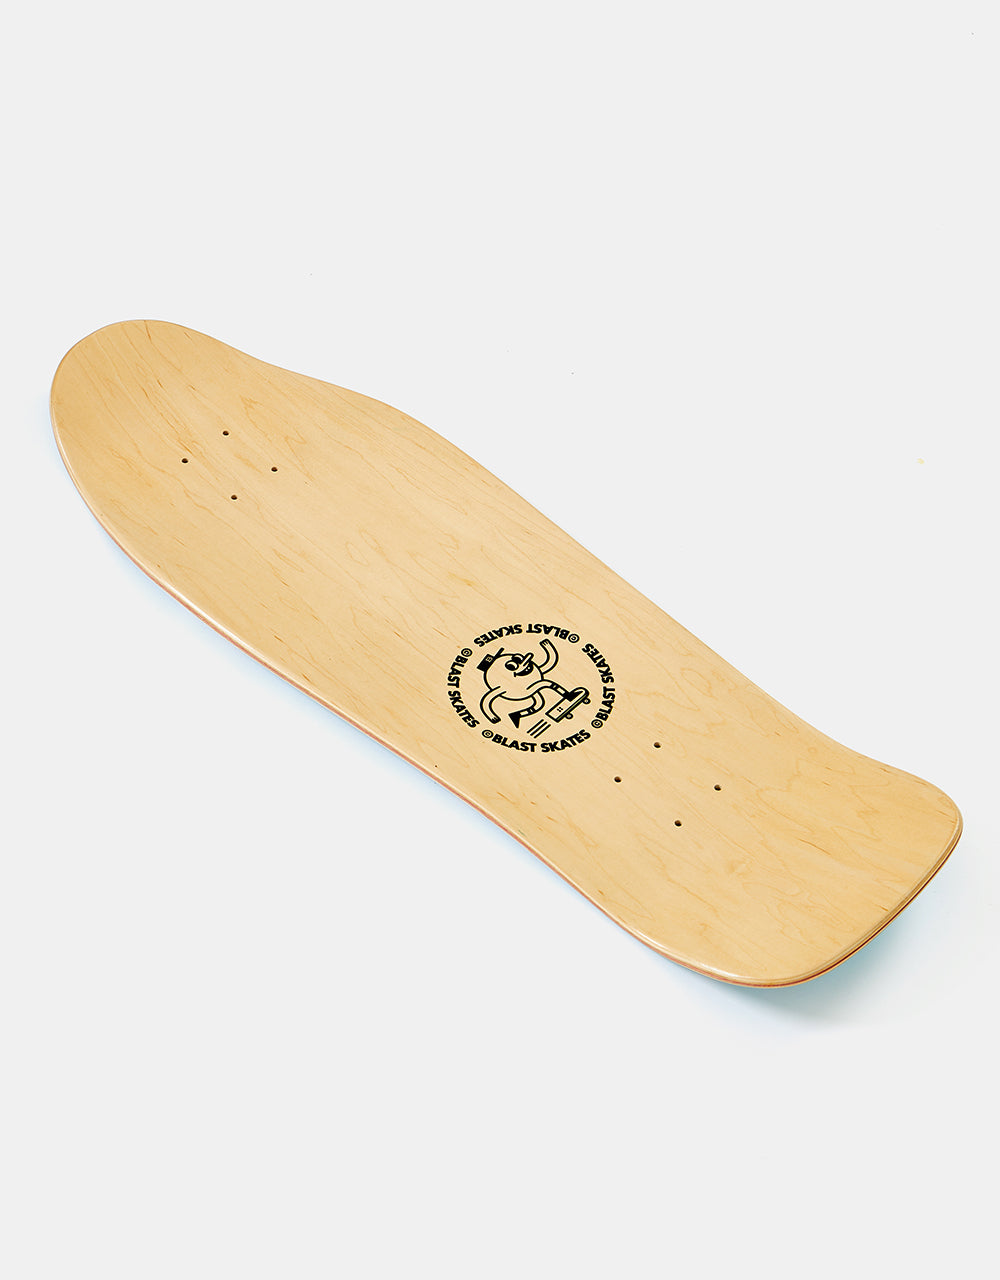 Blast Pérez Monkey Skateboard Deck - 9.75"